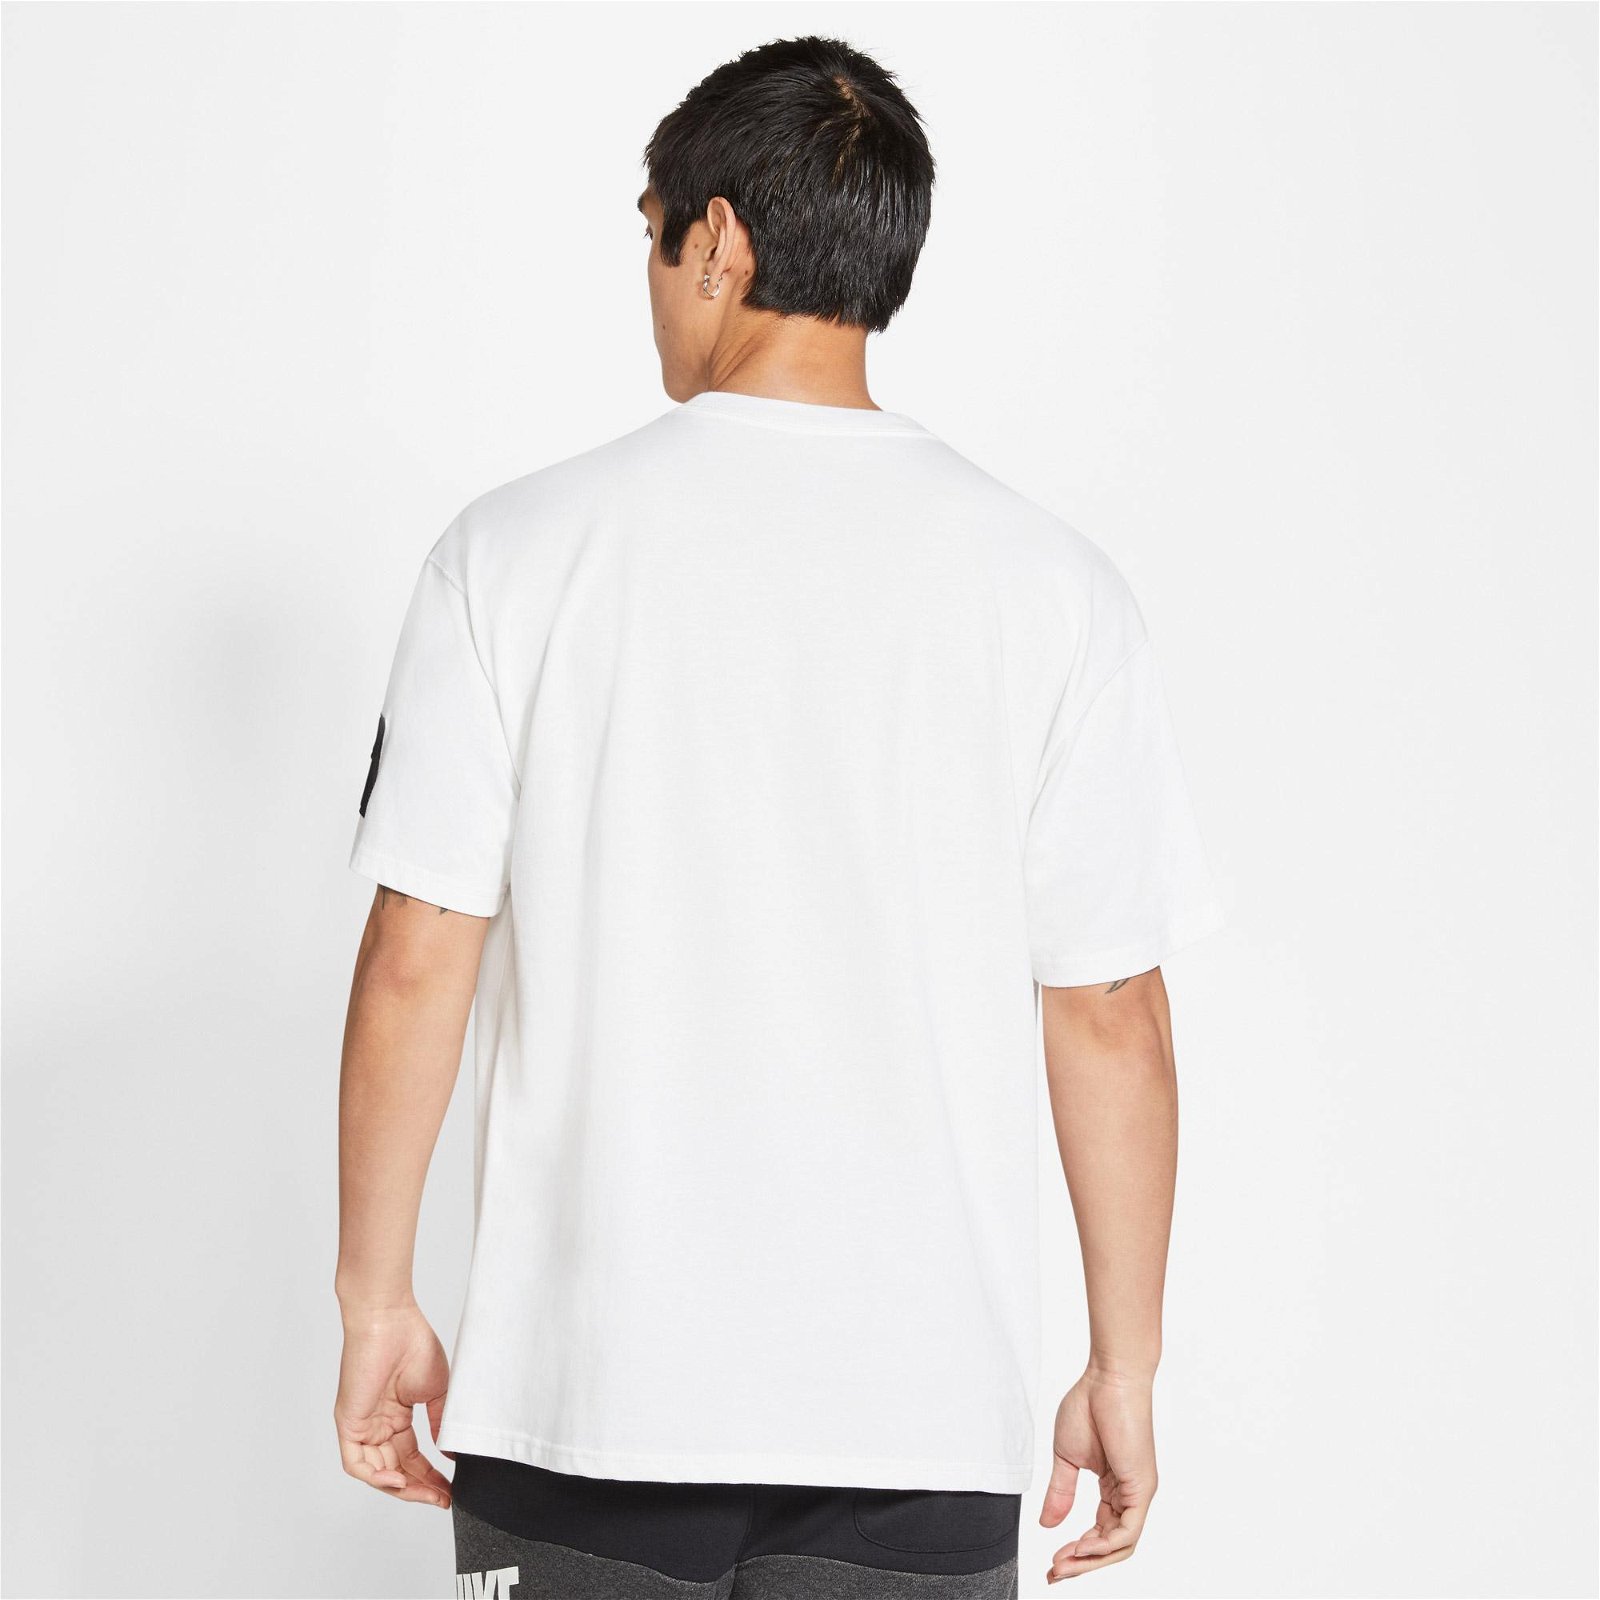 Nike Air Erkek Beyaz T-Shirt